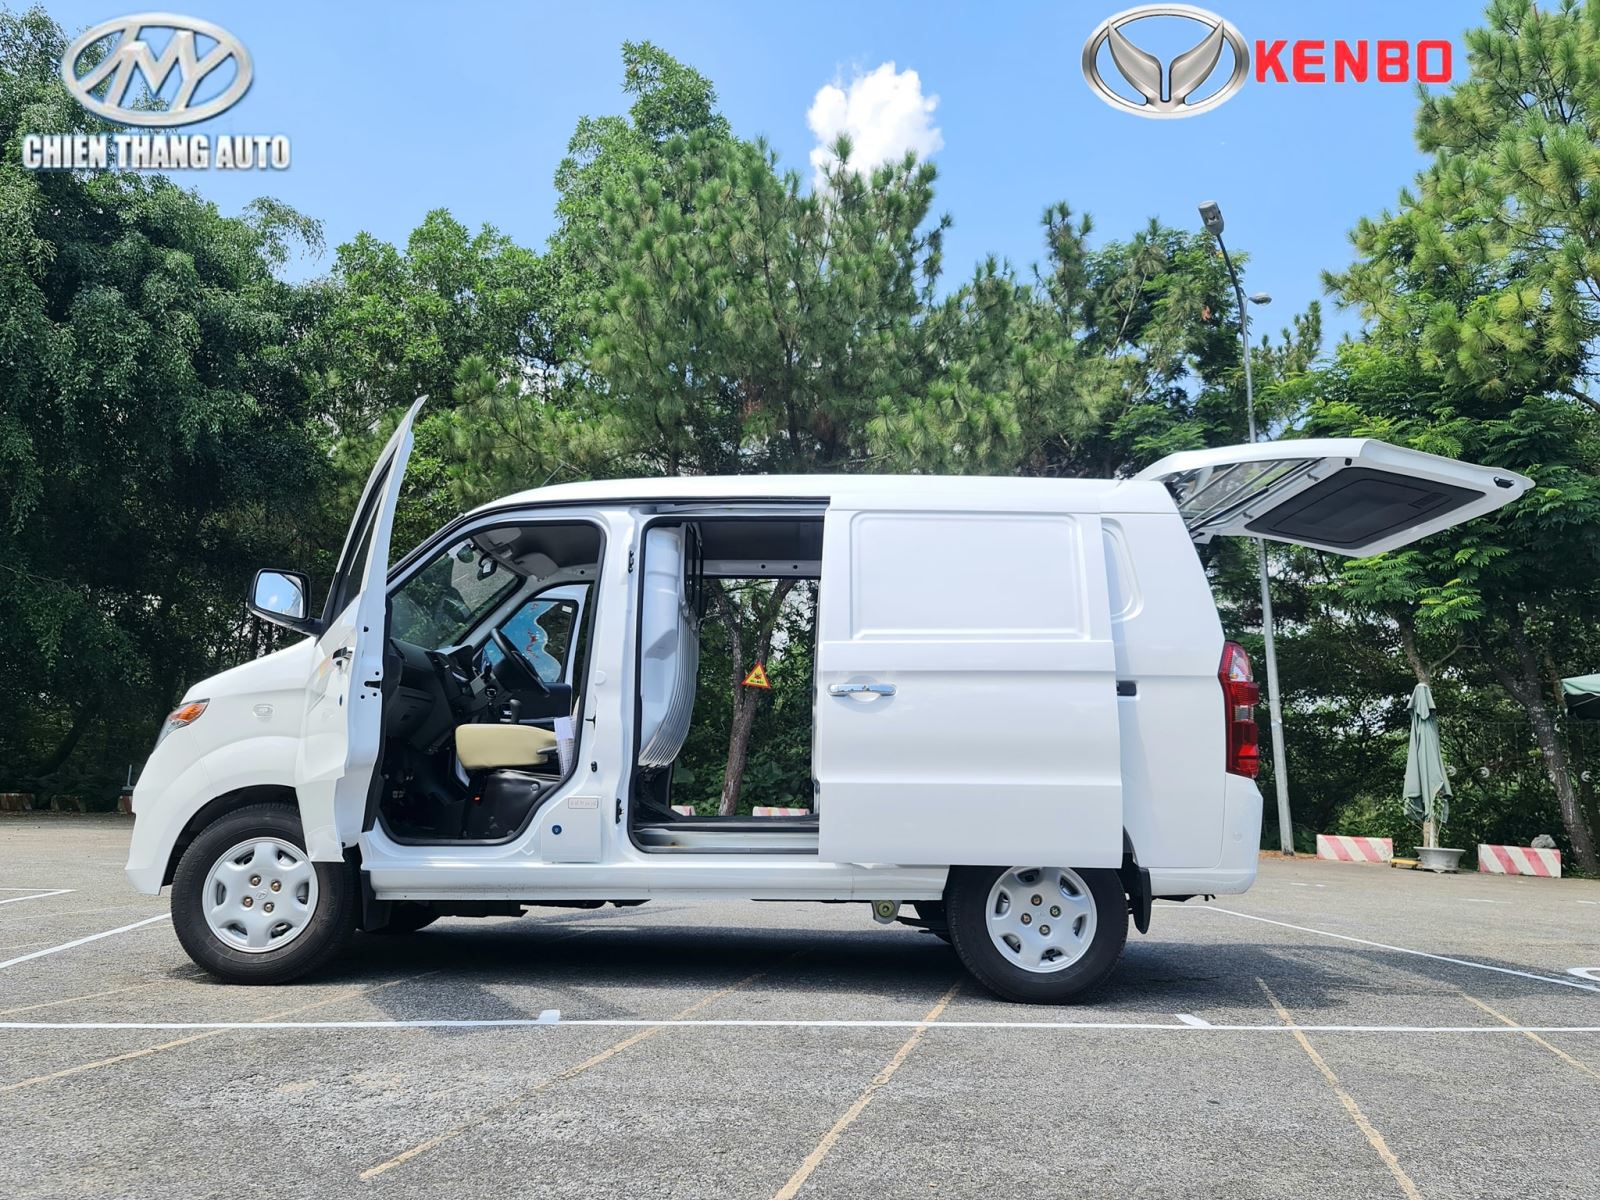 Xe ô tô tải van KENBO 2 chỗ 945 kg, Xe ô tô tải van KENBO 2 chỗ, Xe ô tô tải van KENBO, Xe ô tô tải van, ô tô kenbo